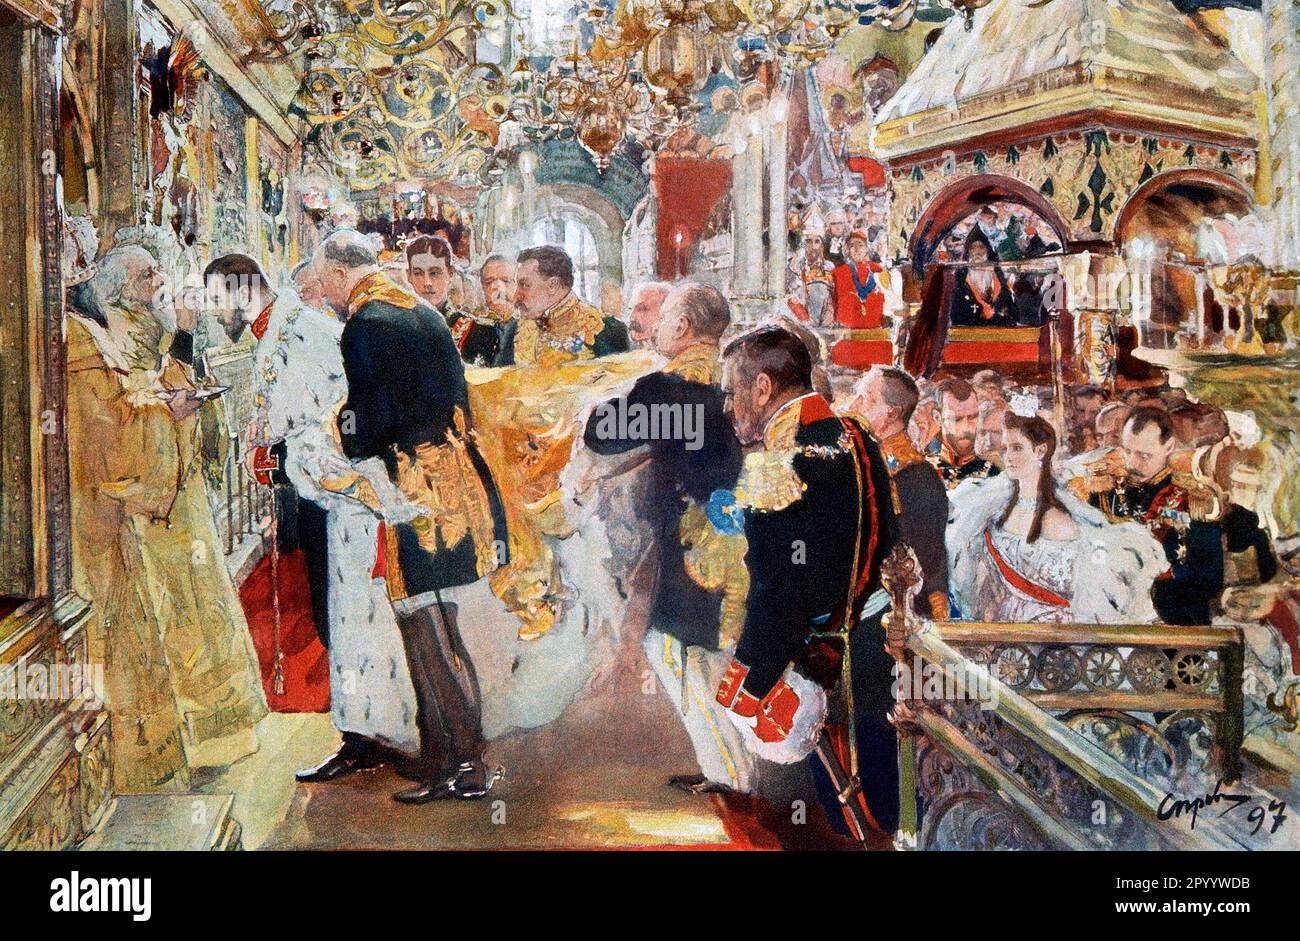 Incoronazione - Anzione dell'imperatore Nicola II di Russia, 1896 - Valentin Serov, 1897 Foto Stock